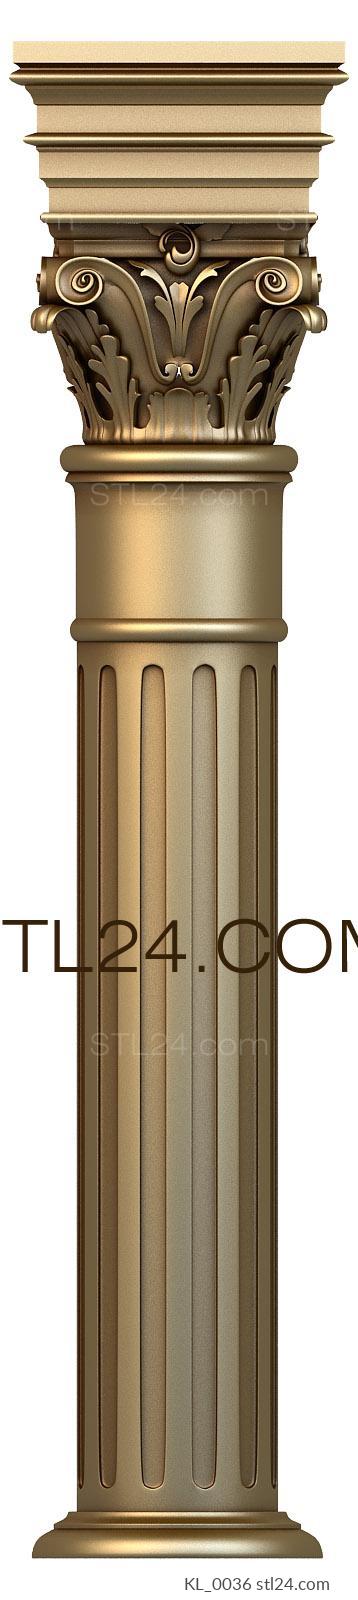 Колонны (классическая колонна, 3д модель для ЧПУ, KL_0036) 3D модель для ЧПУ станка